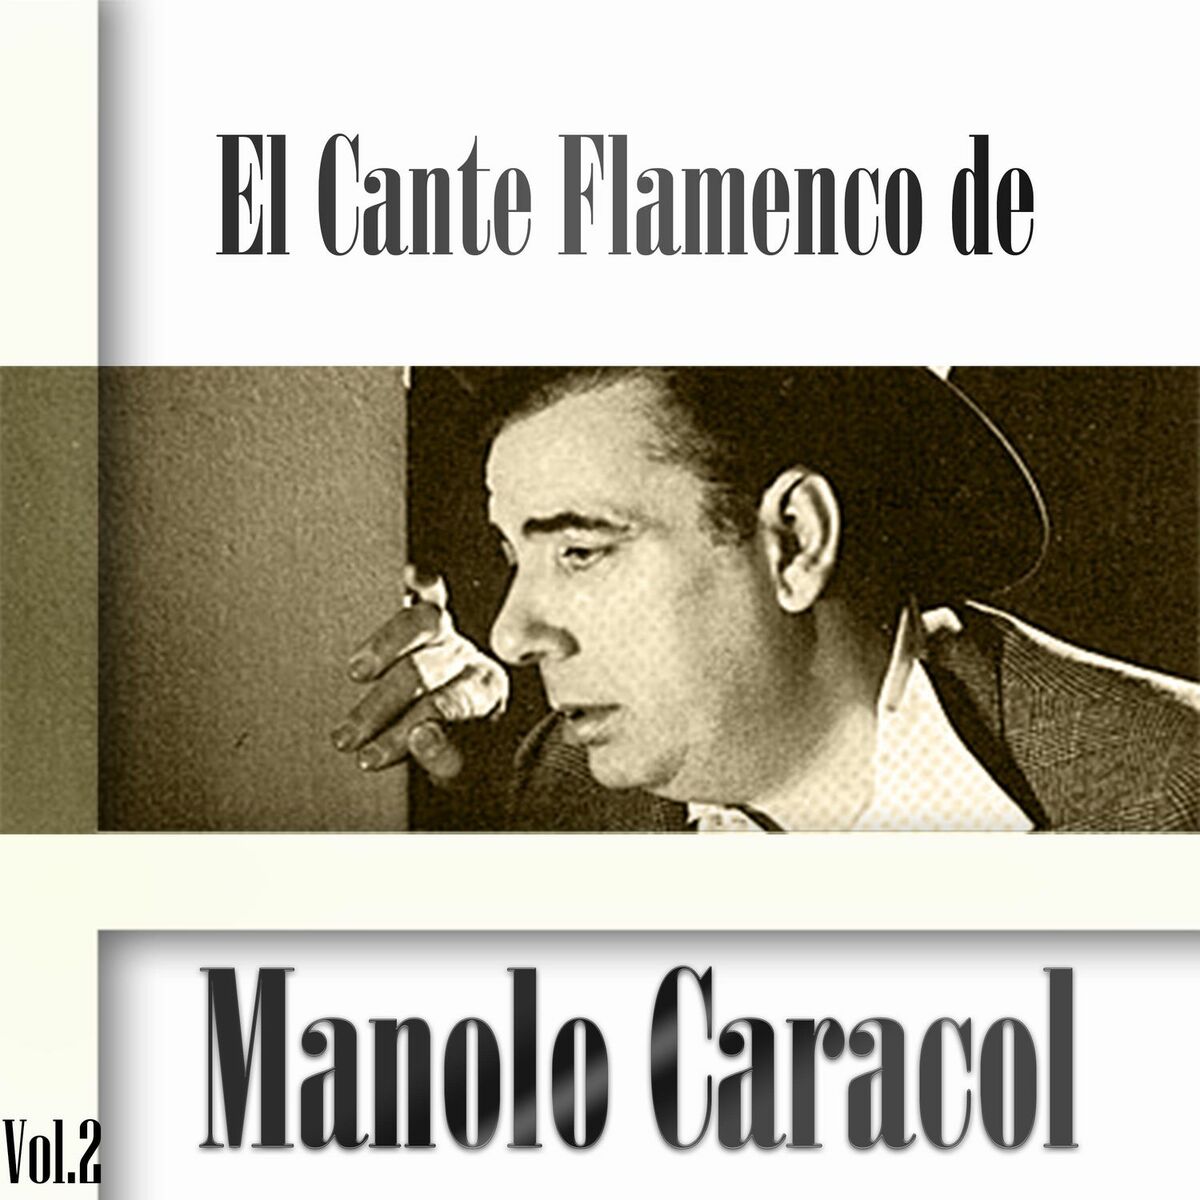 Manolo Caracol: albums